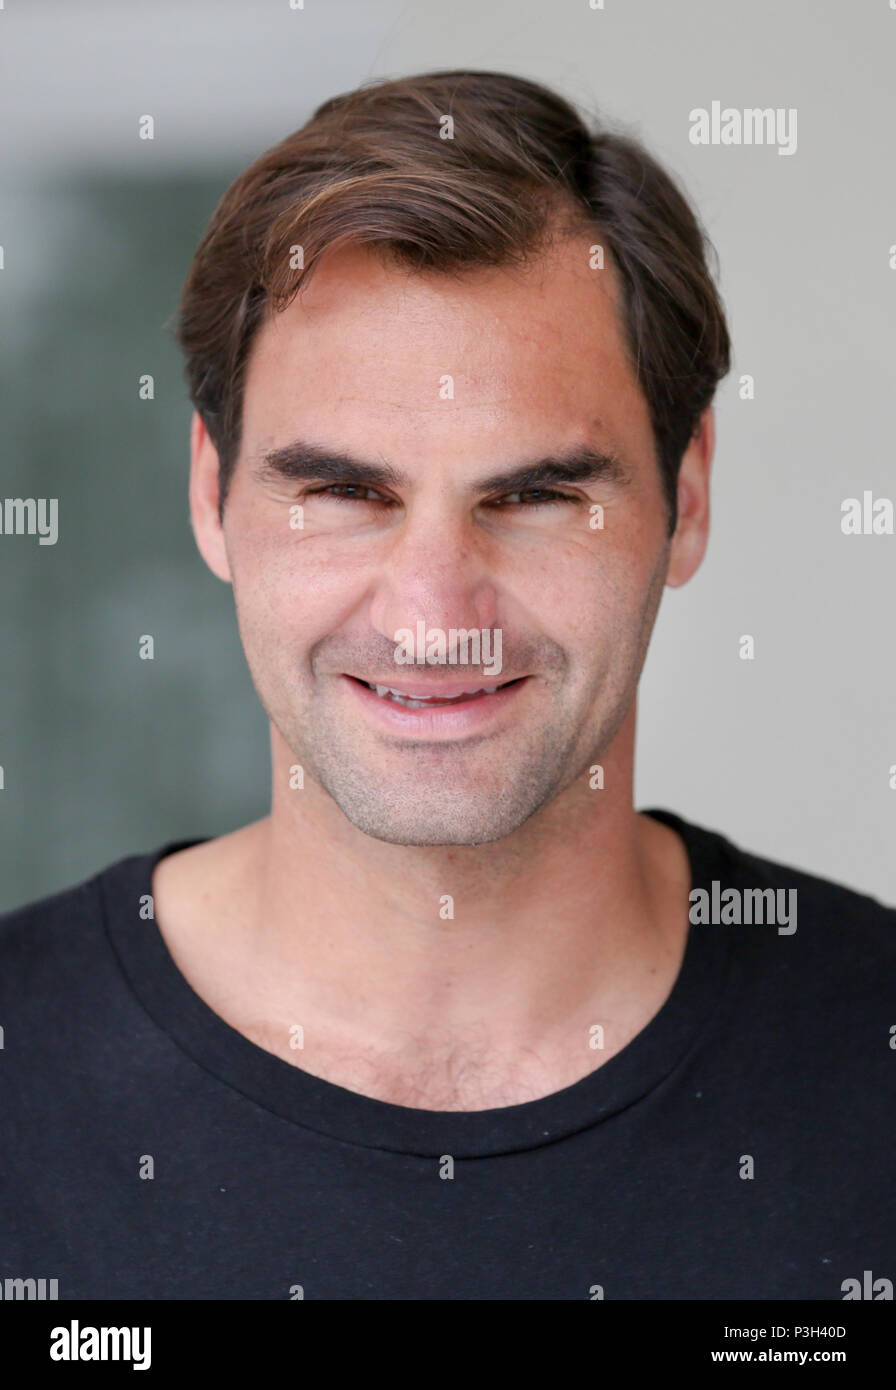 18 Juni 2018, Halle, Deutschland - Tennis, ATP-Tour, Herren Einzel, Erste Runde: Die Nummer eins Roger Federer aus der Schweiz vor dem Start des Turniers. Foto: Friso Gentsch/dpa Stockfoto